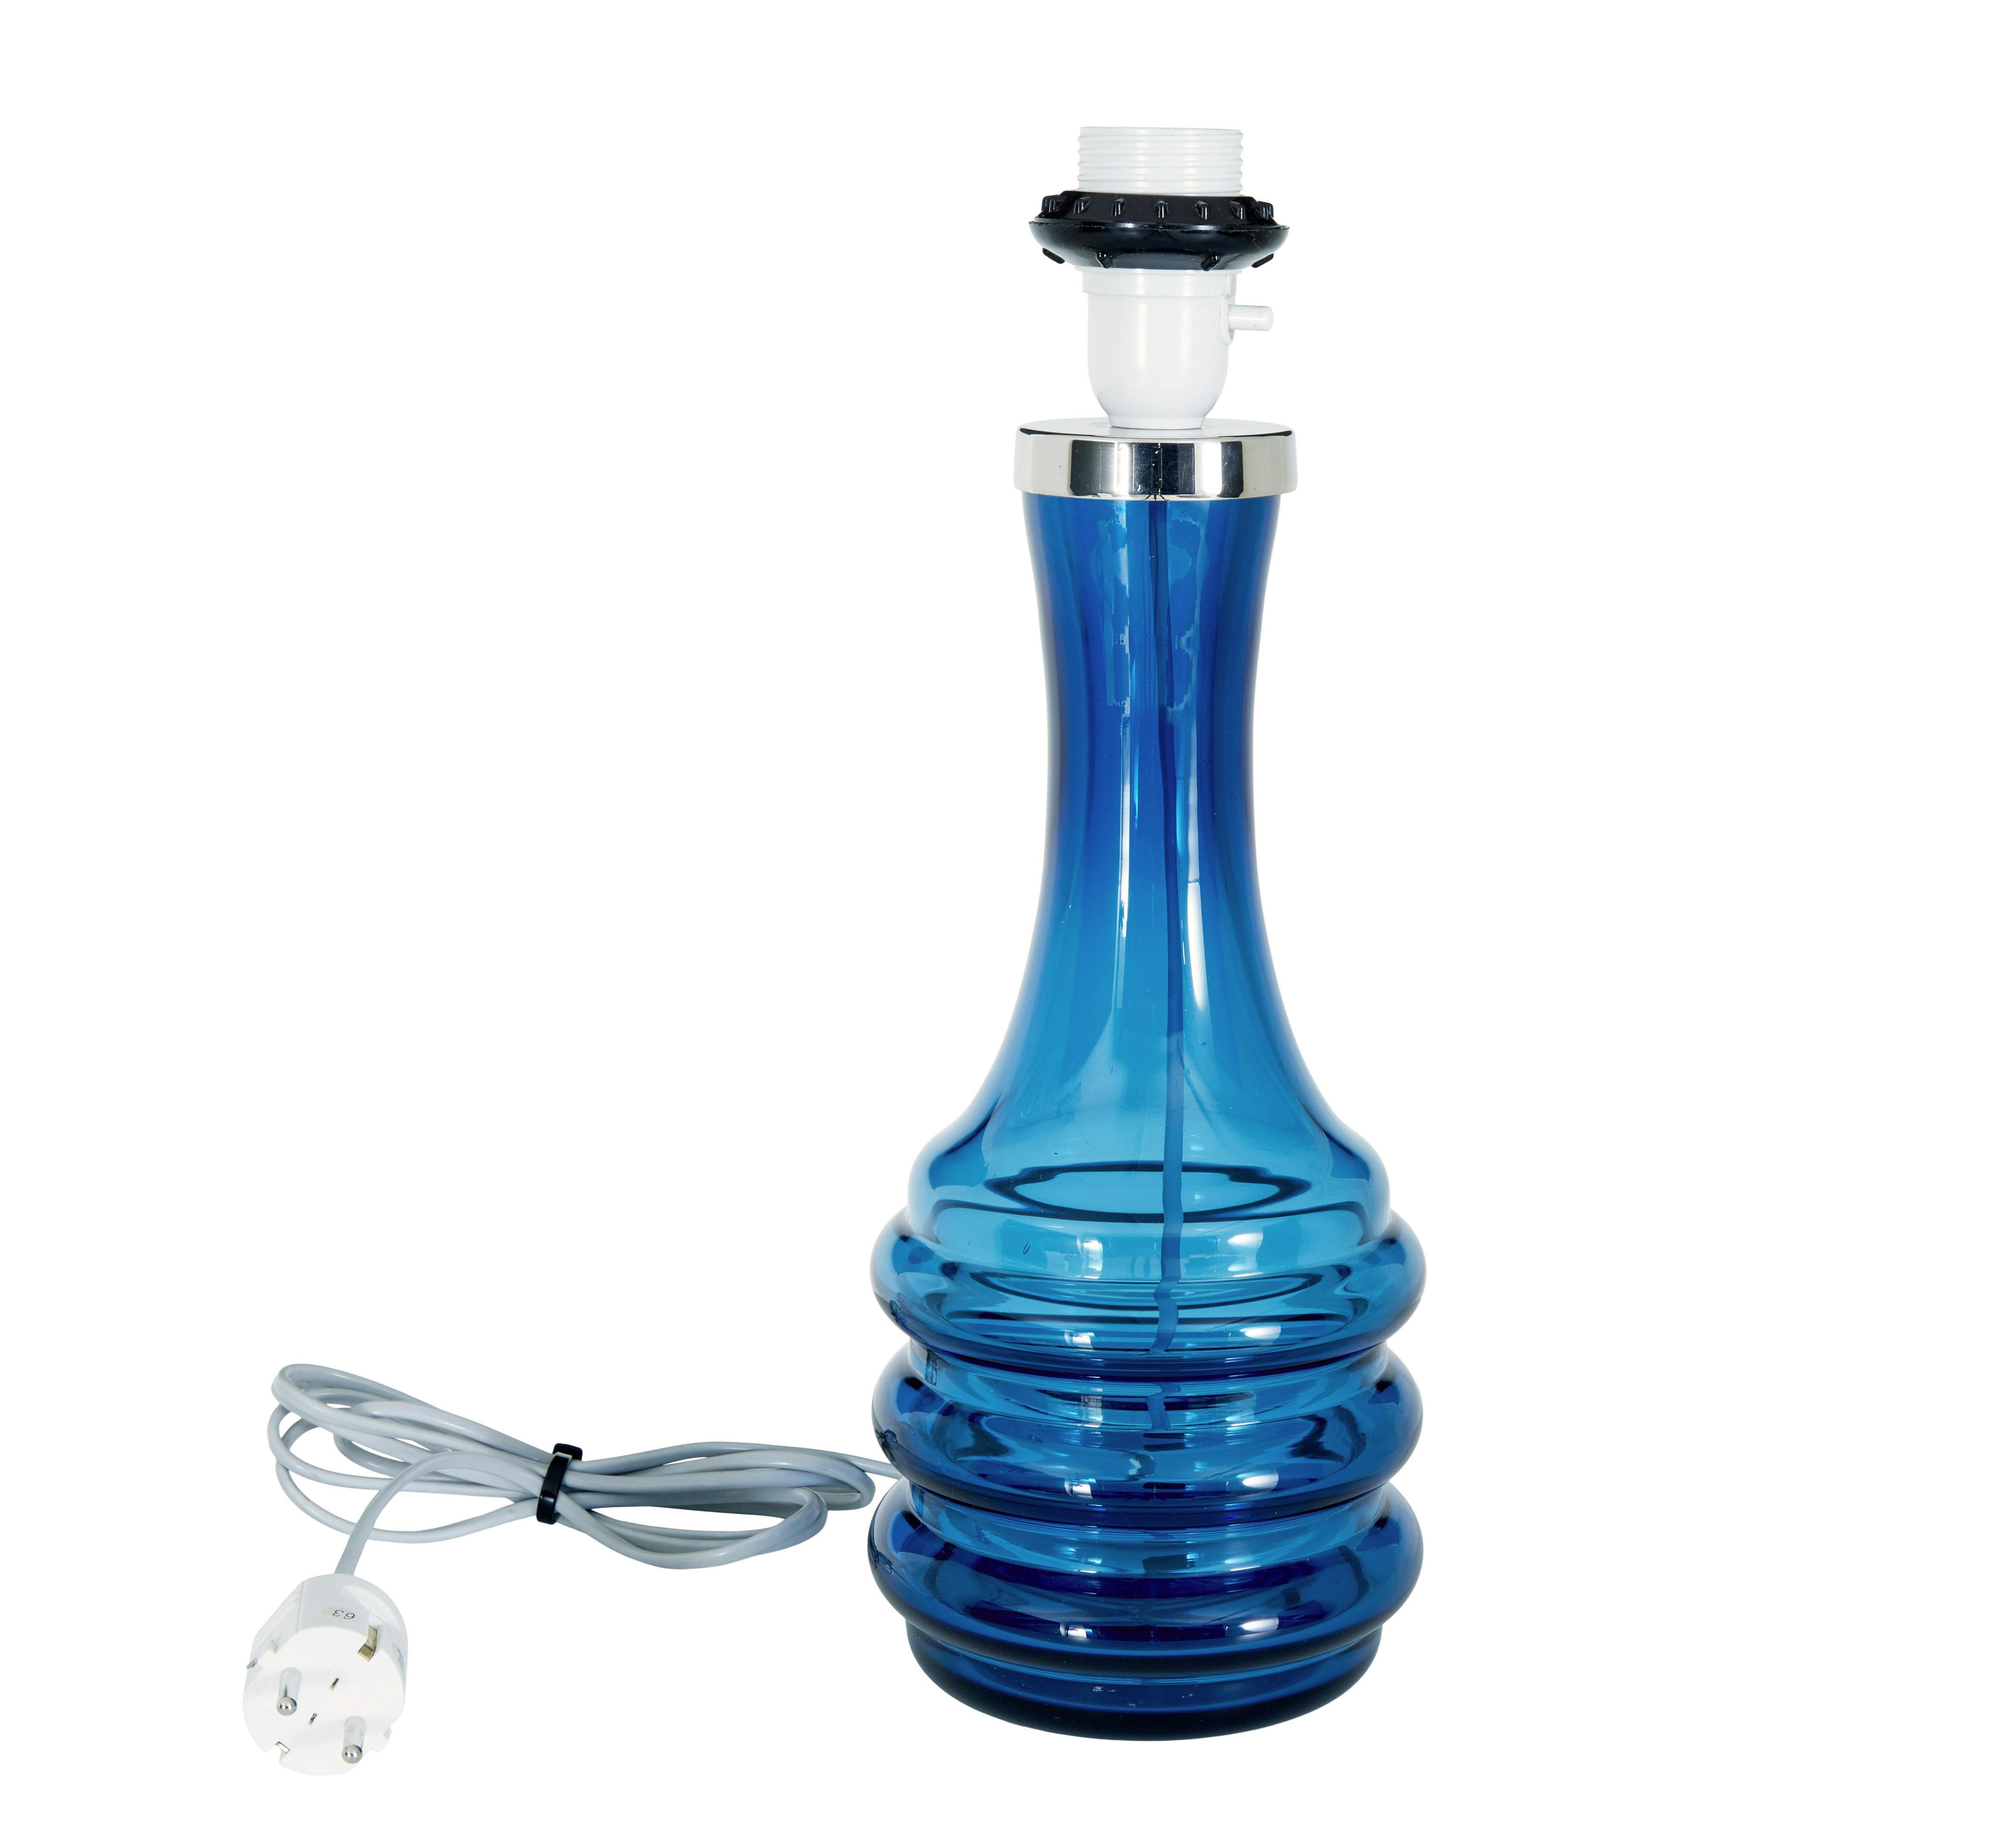 Lampe en verre coloré Orrefors du 20e siècle, vers 1970.

Superbe lampe en verre du célèbre fabricant suédois de verre fin, Orrefors.  Porte-ampoule à filetage, avec un collier chromé sous lequel est gravé le nom du fabricant.  Verre de forme bleu